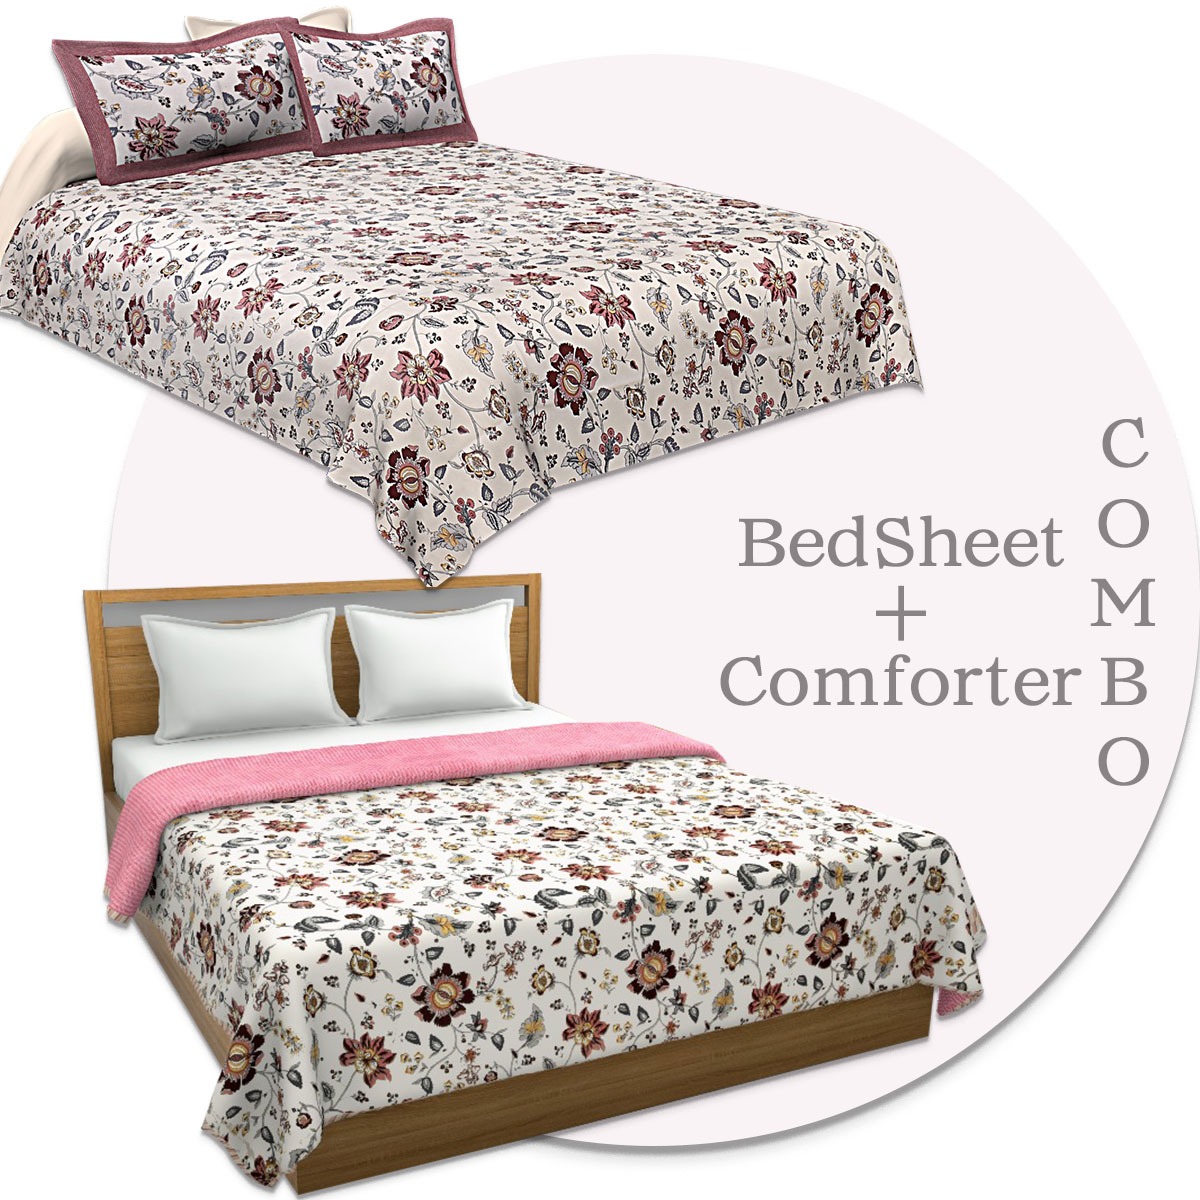 Combo121 Comforter Bedsheet Combo